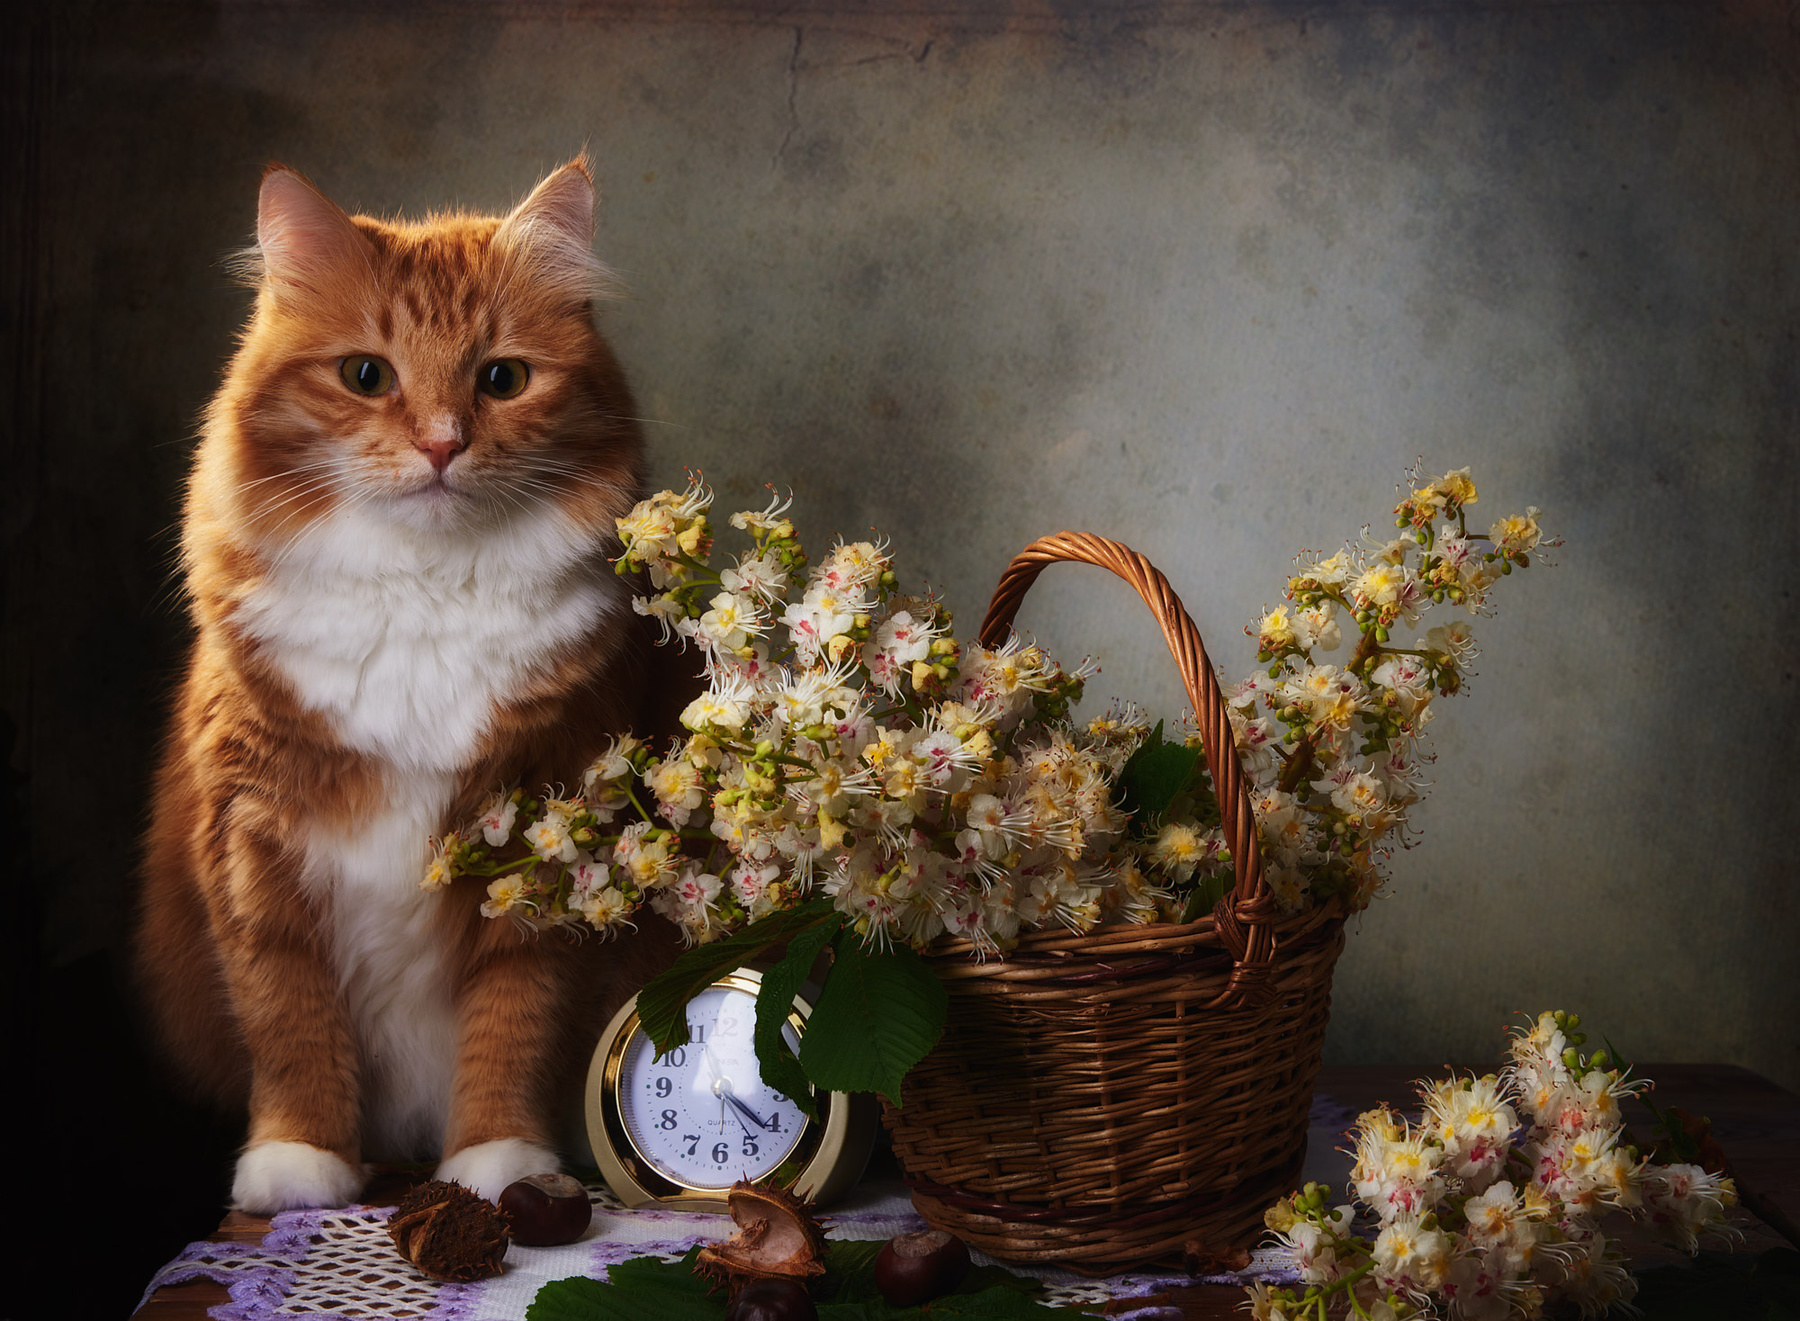 Рыжий кот и цветы каштана натюрморт композиция постановка сцена кот питомец любимец цветы каштан